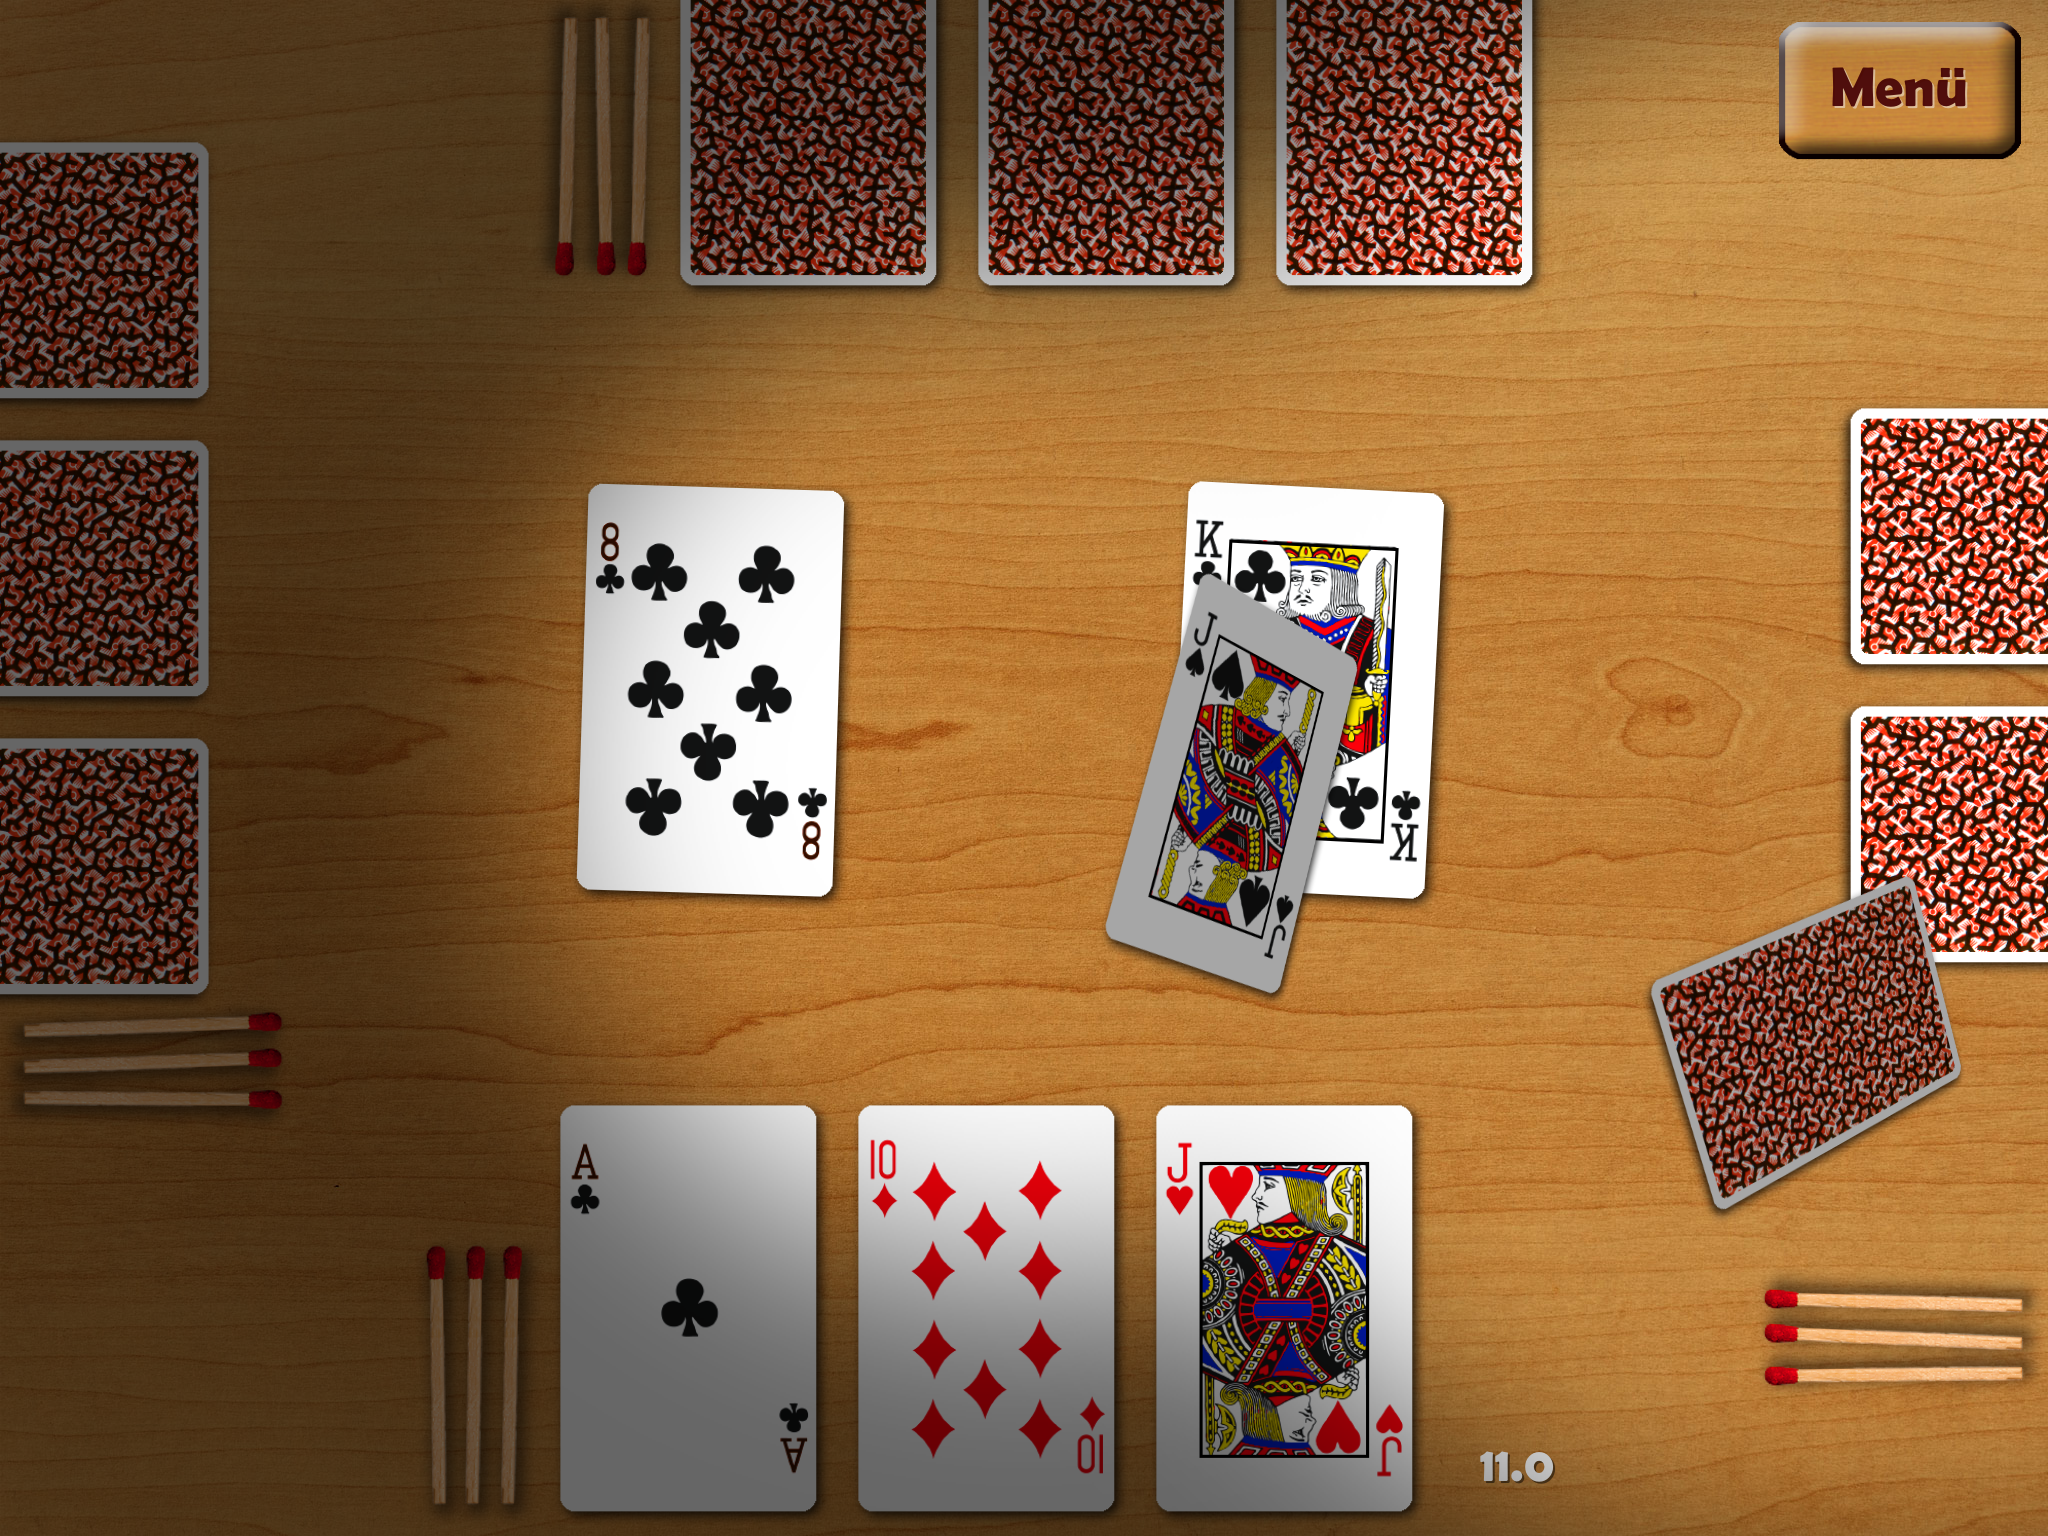 Hosn obe - 31 Kult-Kartenspiel Schwimmen auf dem iPhone und dem iPad!, DonkeyCat GmbH, Story